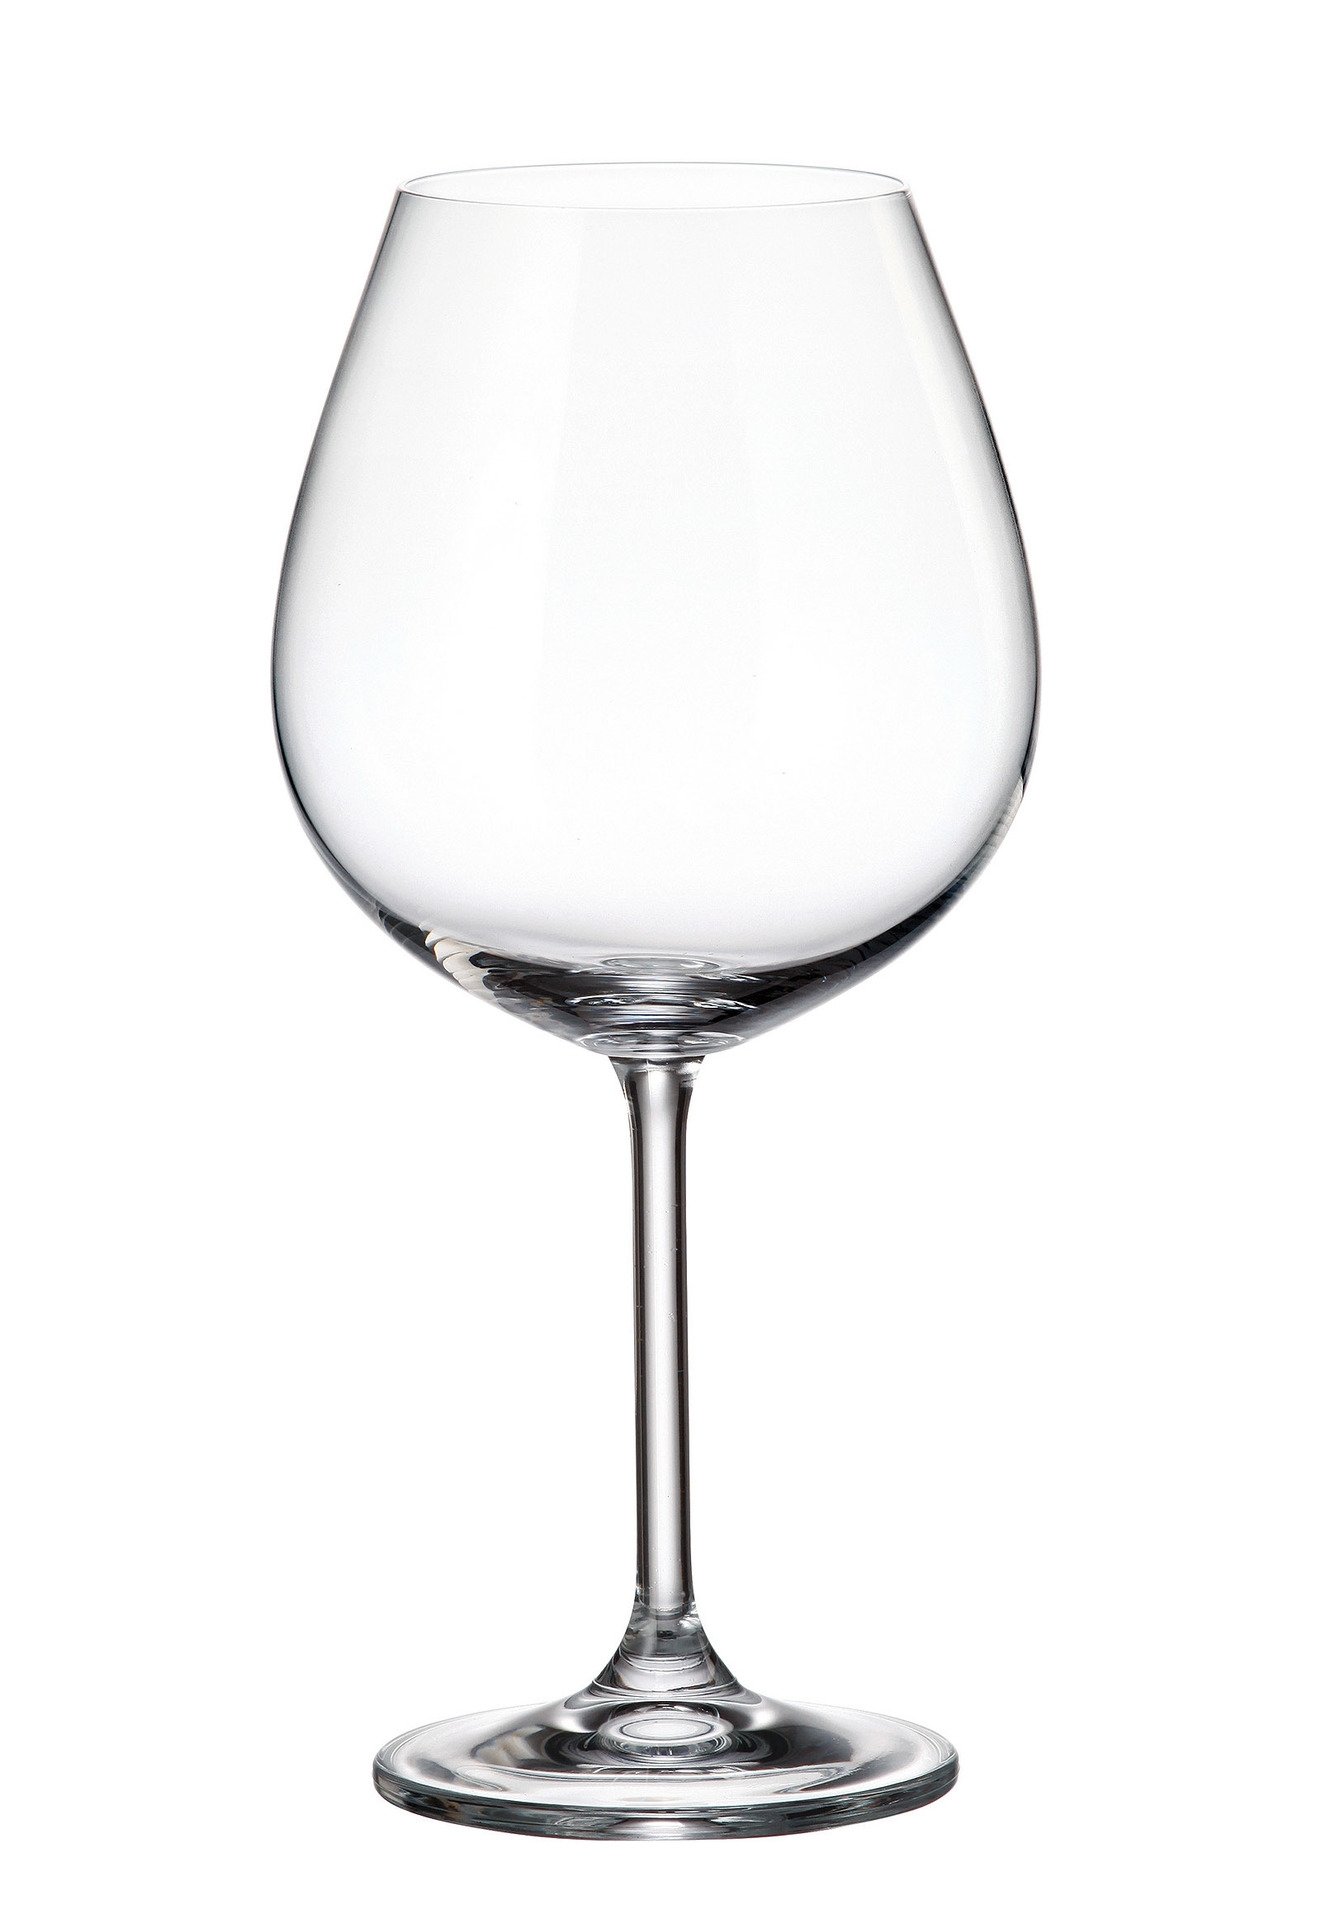 Ποτήρι Κρασιού Κρυστάλλινο Bohemia Colibri 650ml CTB03202065 (Σετ 6 Τεμάχια) (Υλικό: Κρύσταλλο, Χρώμα: Διάφανο , Μέγεθος: Κολωνάτο) – Κρύσταλλα Βοημίας – CTB03202065